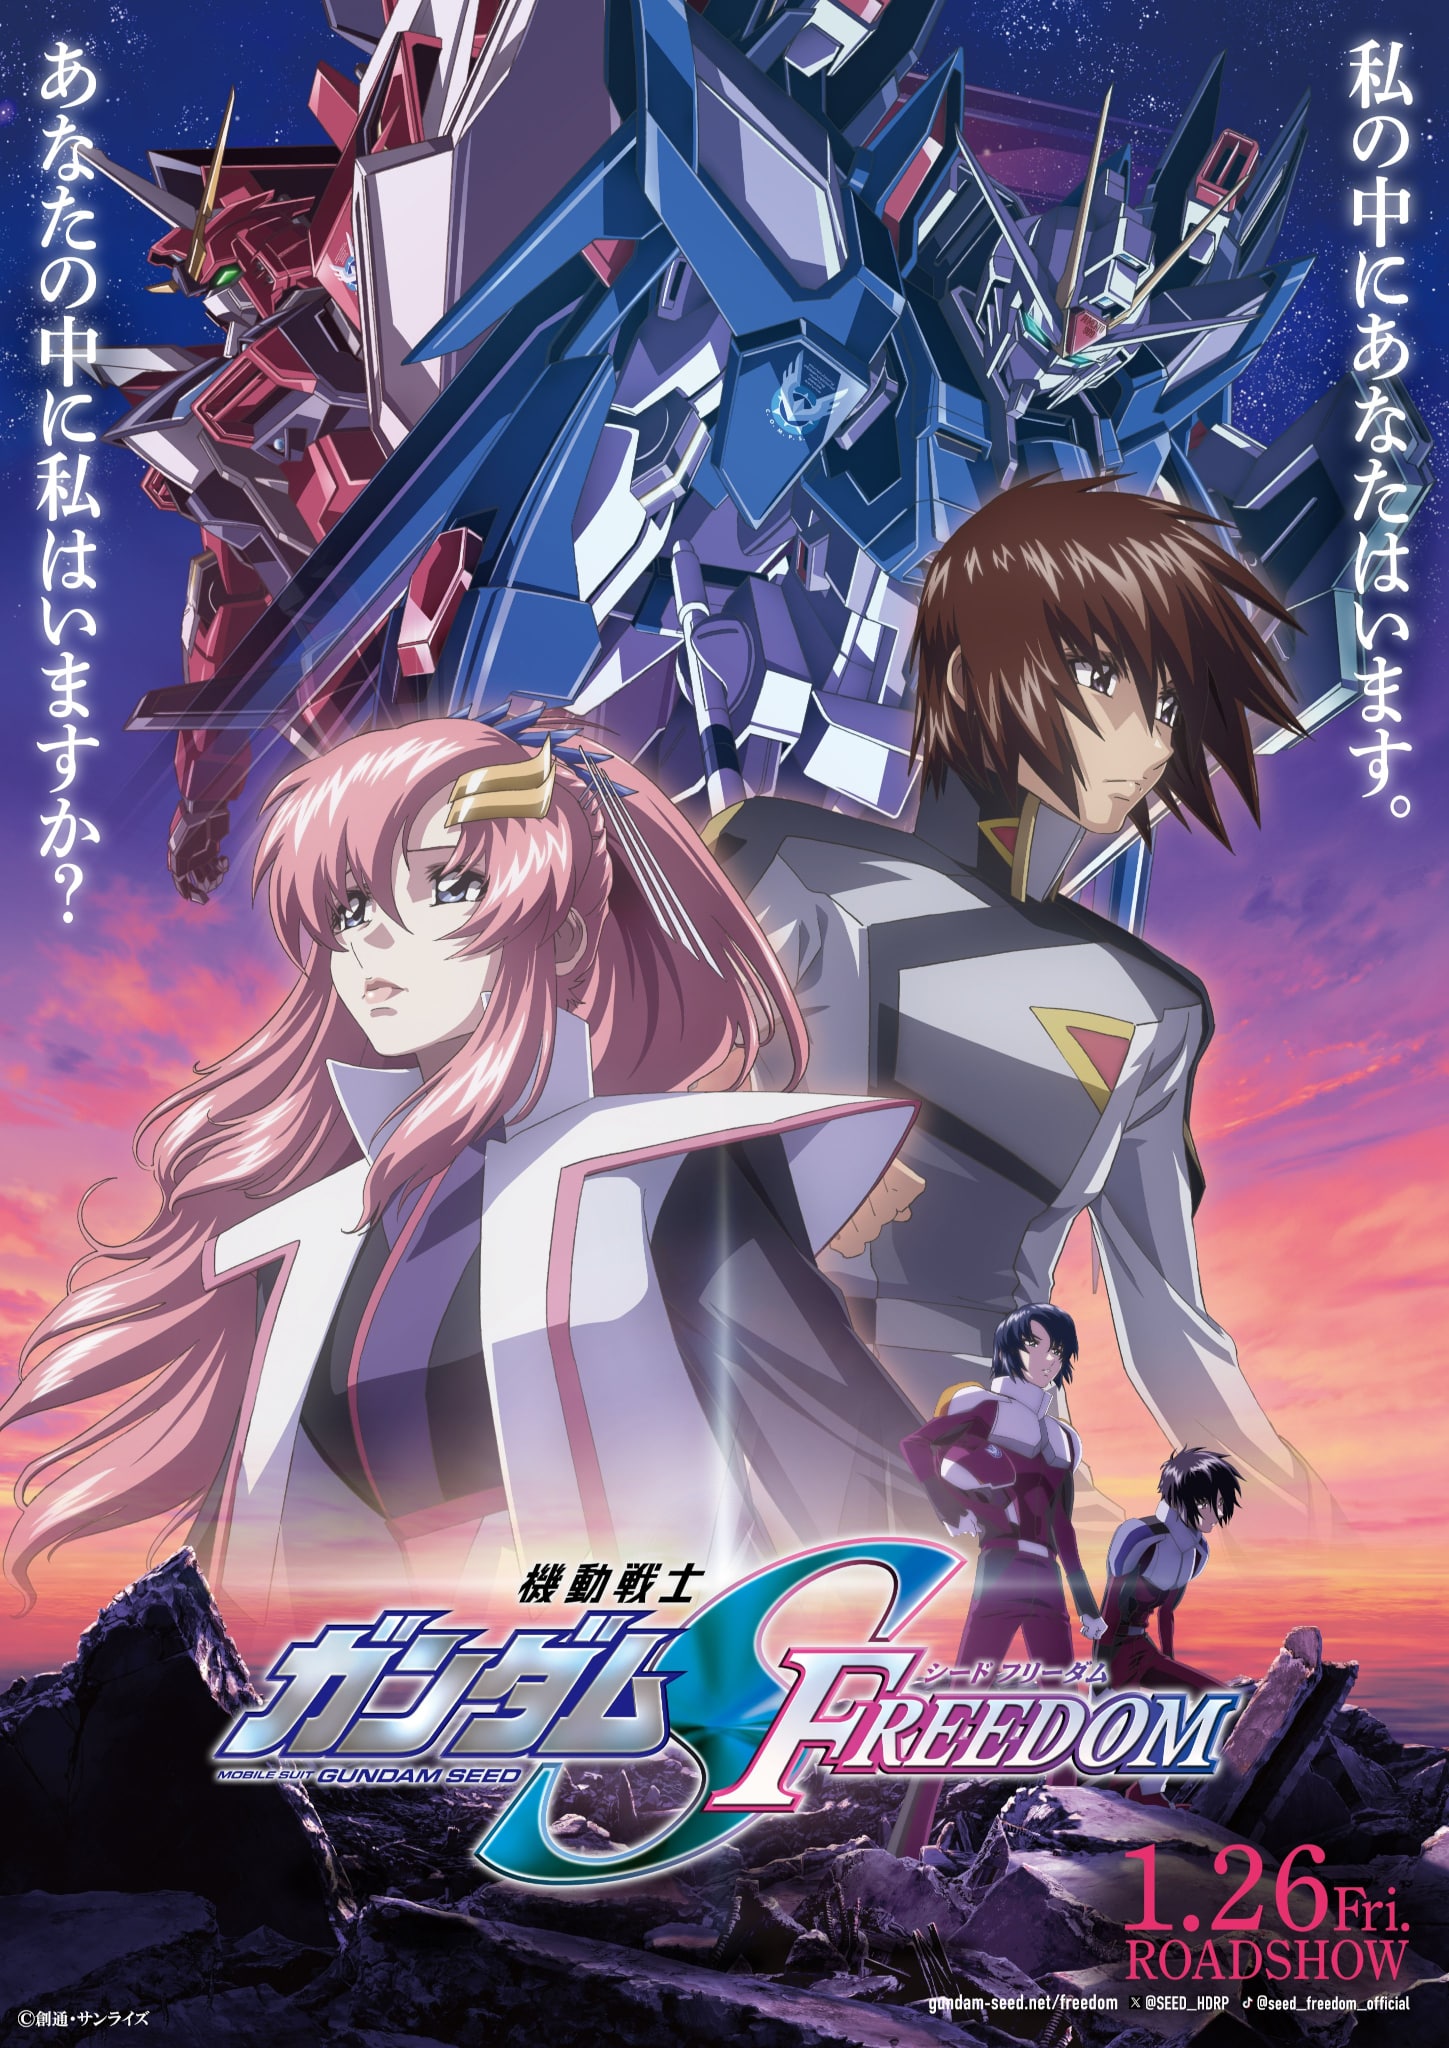 Troisième visuel pour le film Mobile Suit Gundam : SEED FREEDOM